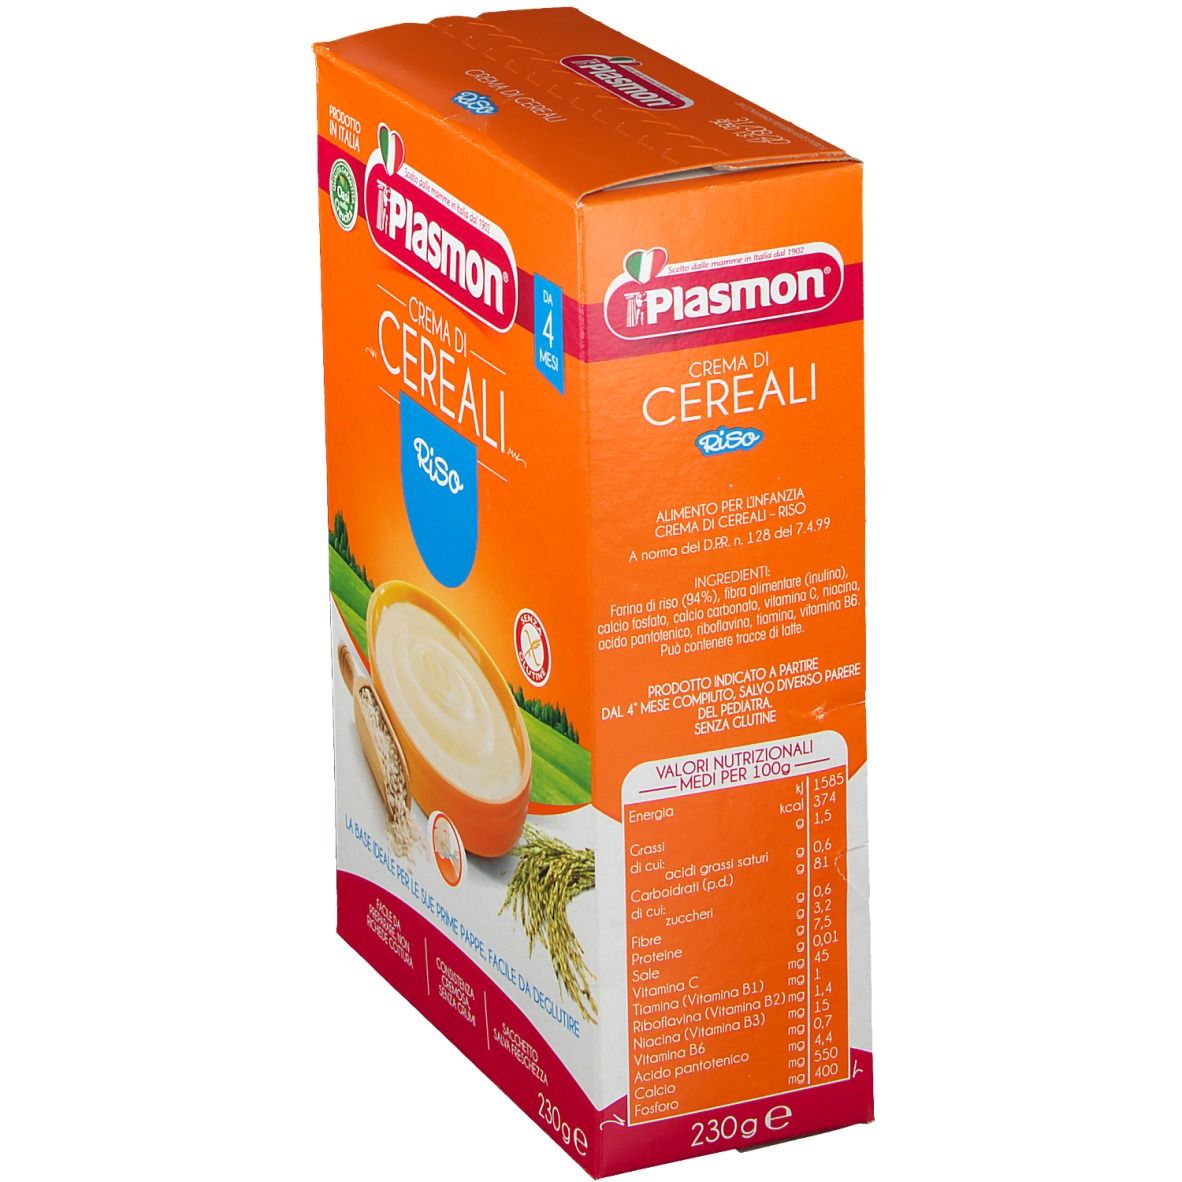 Plasmon® Crema di Cereali Riso 230 g